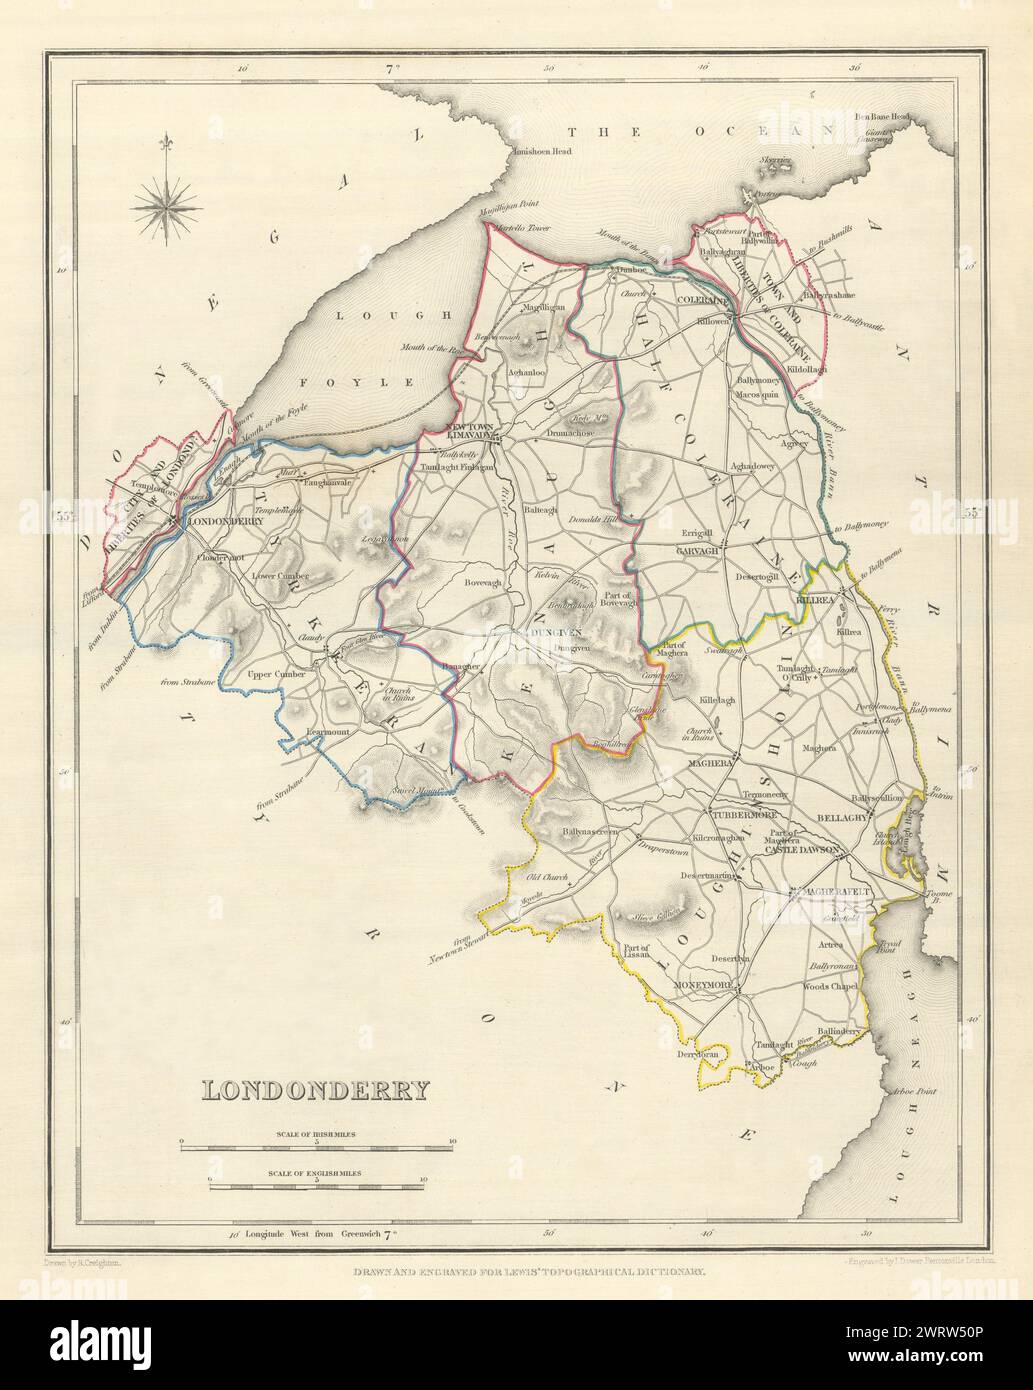 Mappa antica DELLA CONTEA DI LONDONDERRY per LEWIS di CREIGHTON & DOWER. Ulster 1850 Foto Stock